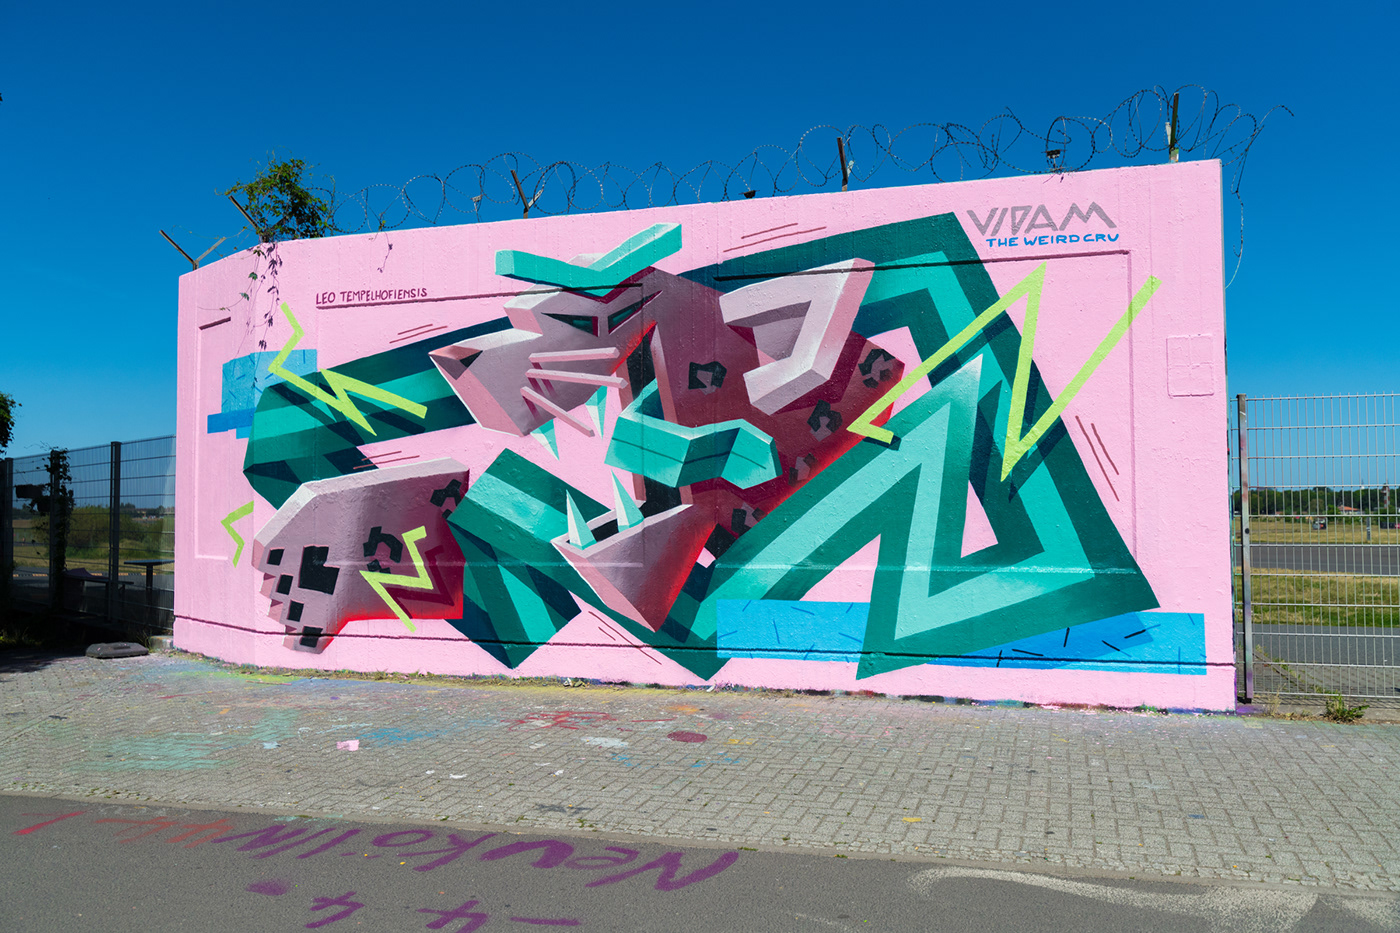 berlin Graffiti Los Angeles Mural streetart the weird Urbanart Vidam walldesign wien